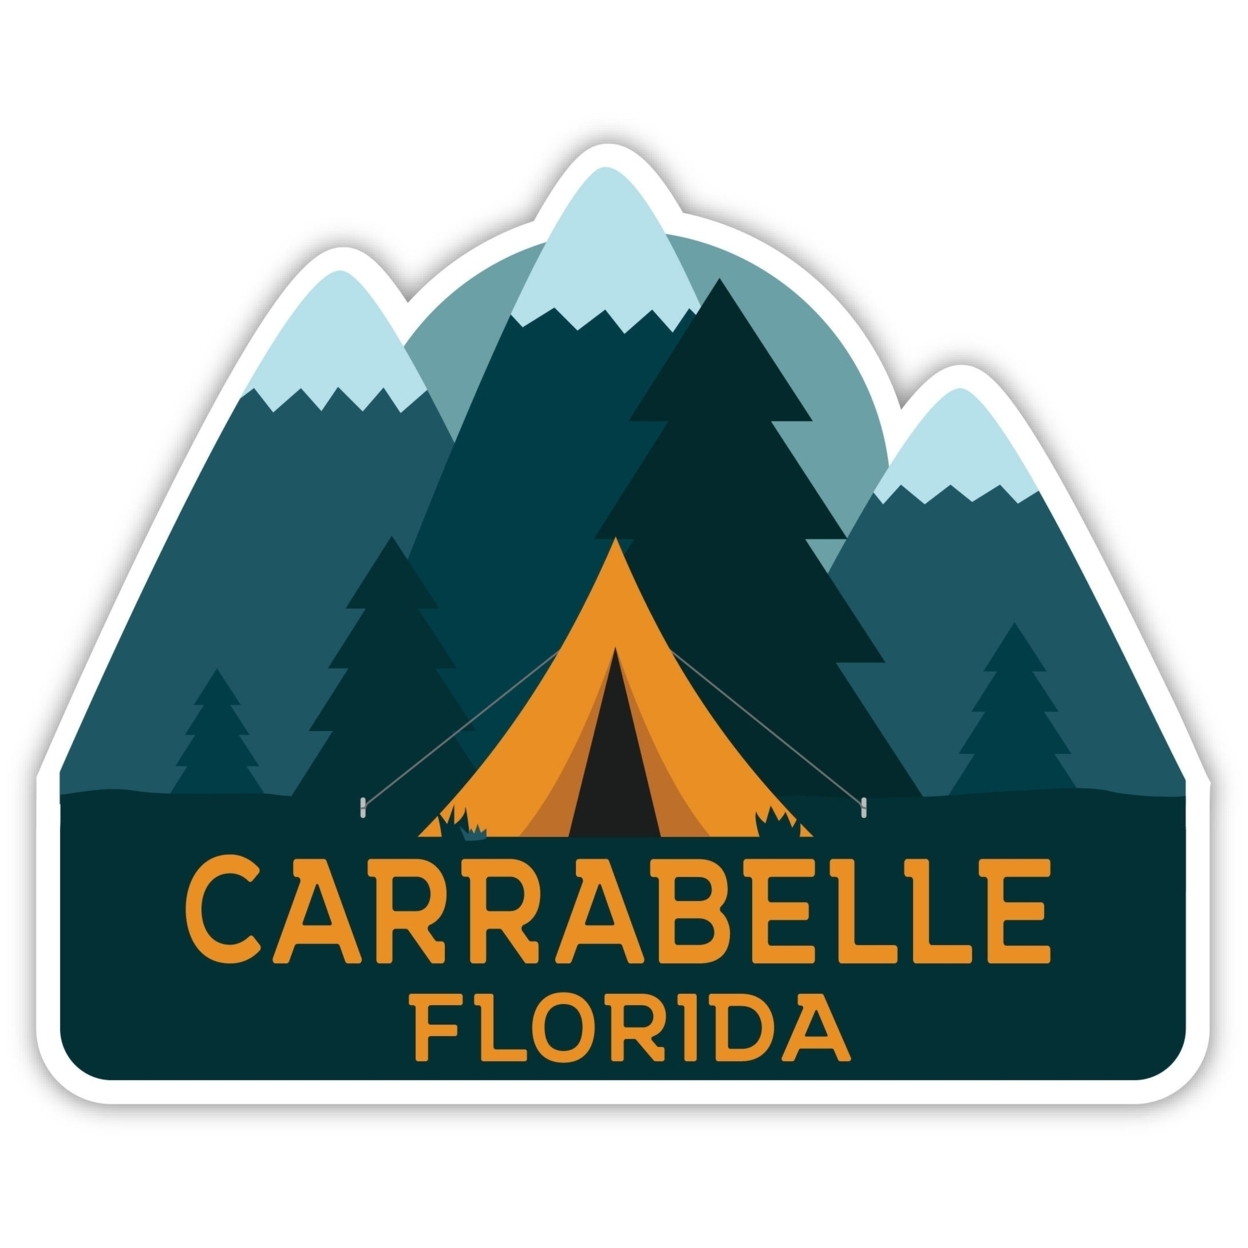 Carrabelle Florida Souvenir Decorative Stickers (Choose Theme And Size) - Single Unit, 8-Inch, Tent